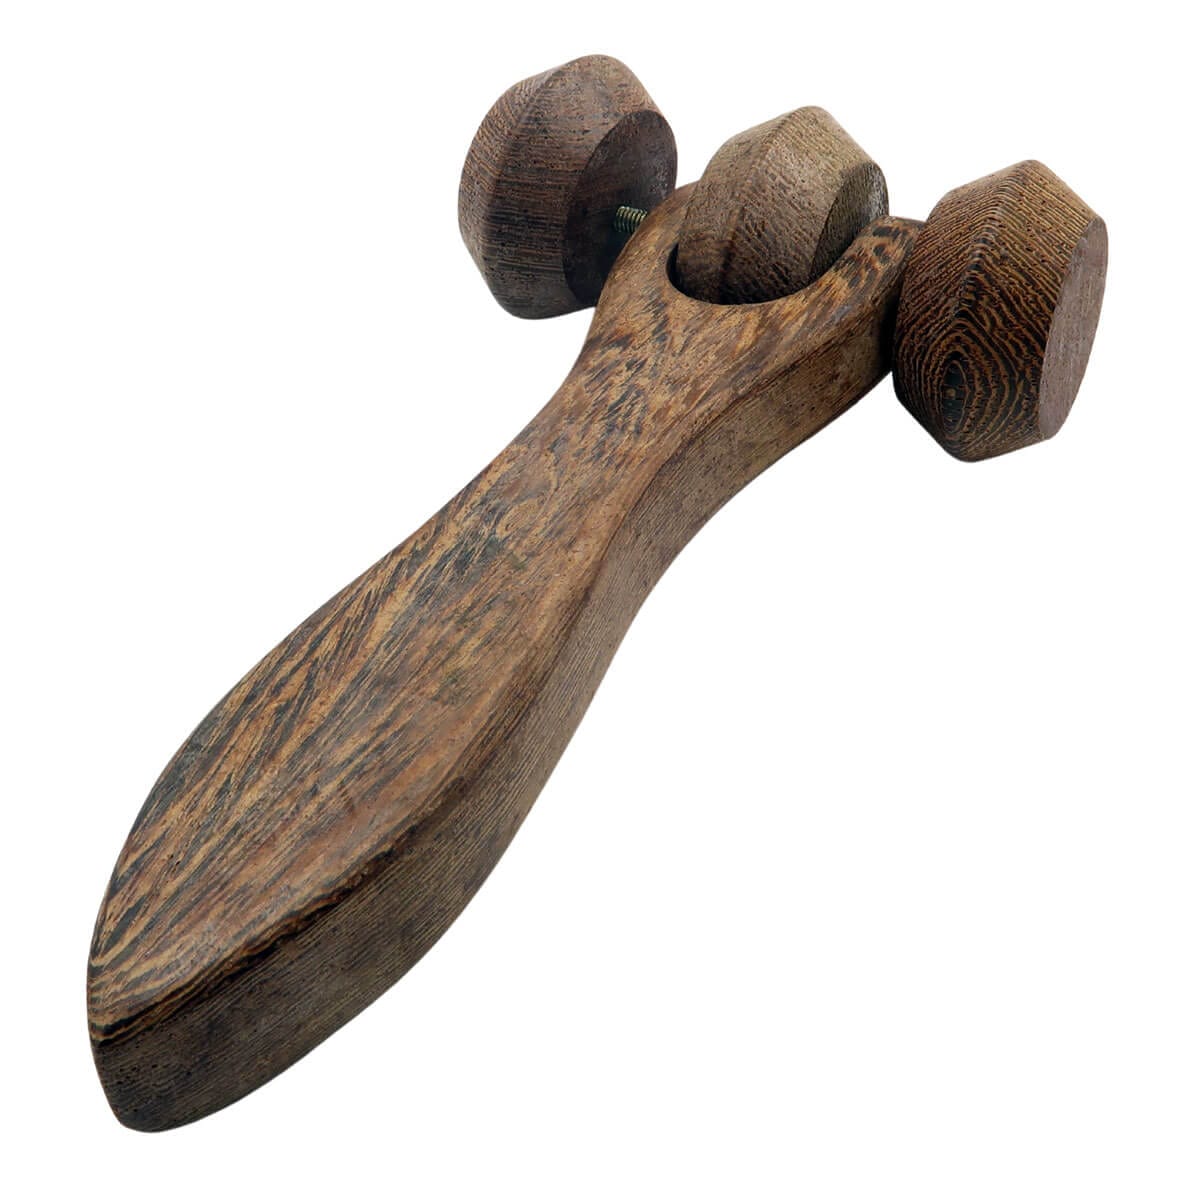 TrioSphere Wooden Massage Roller